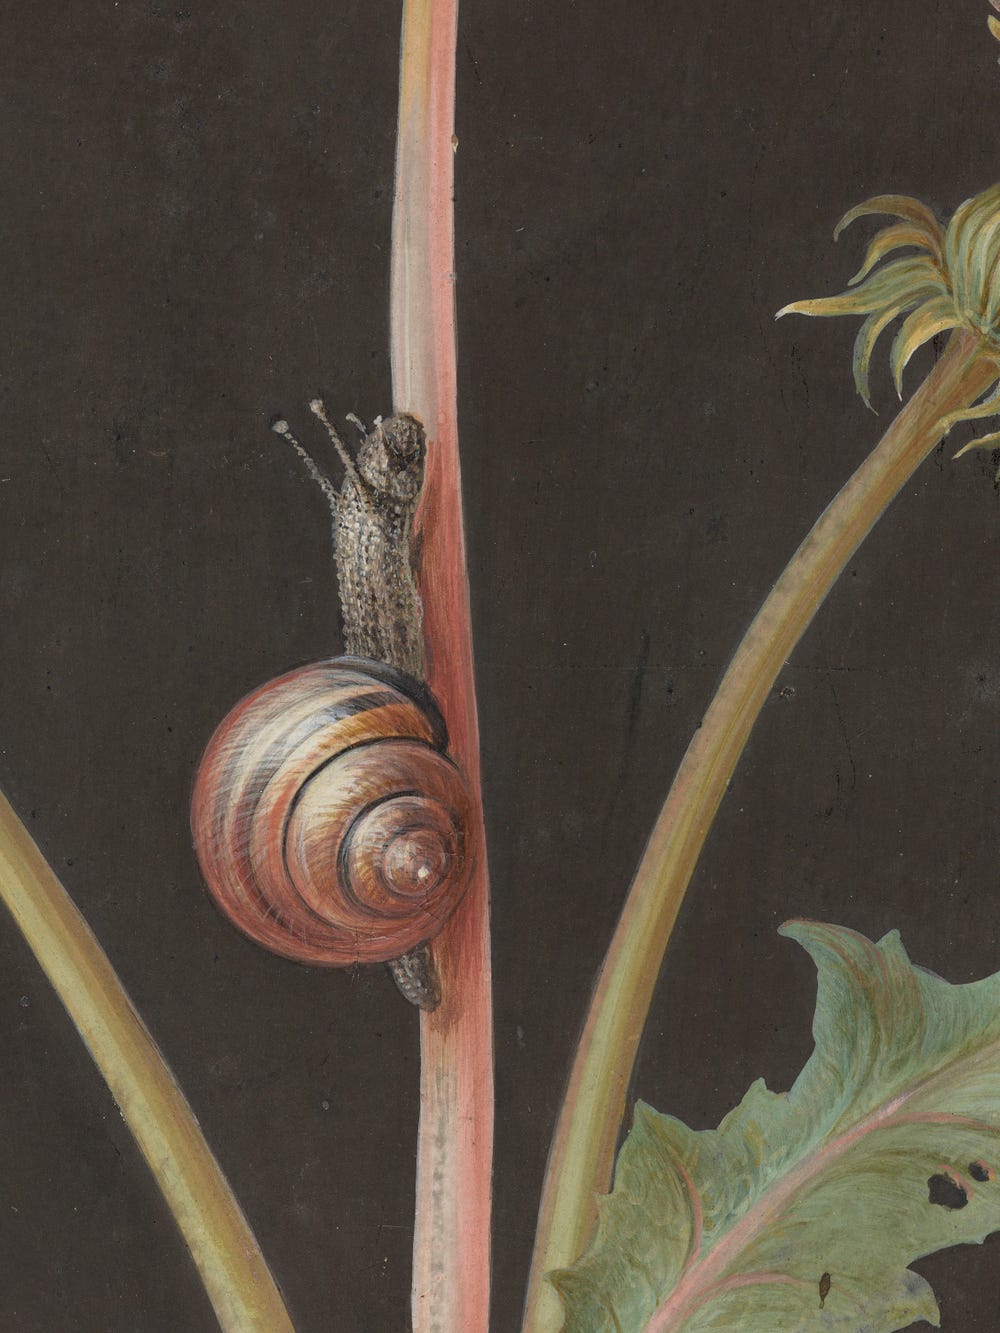 snail on a stem